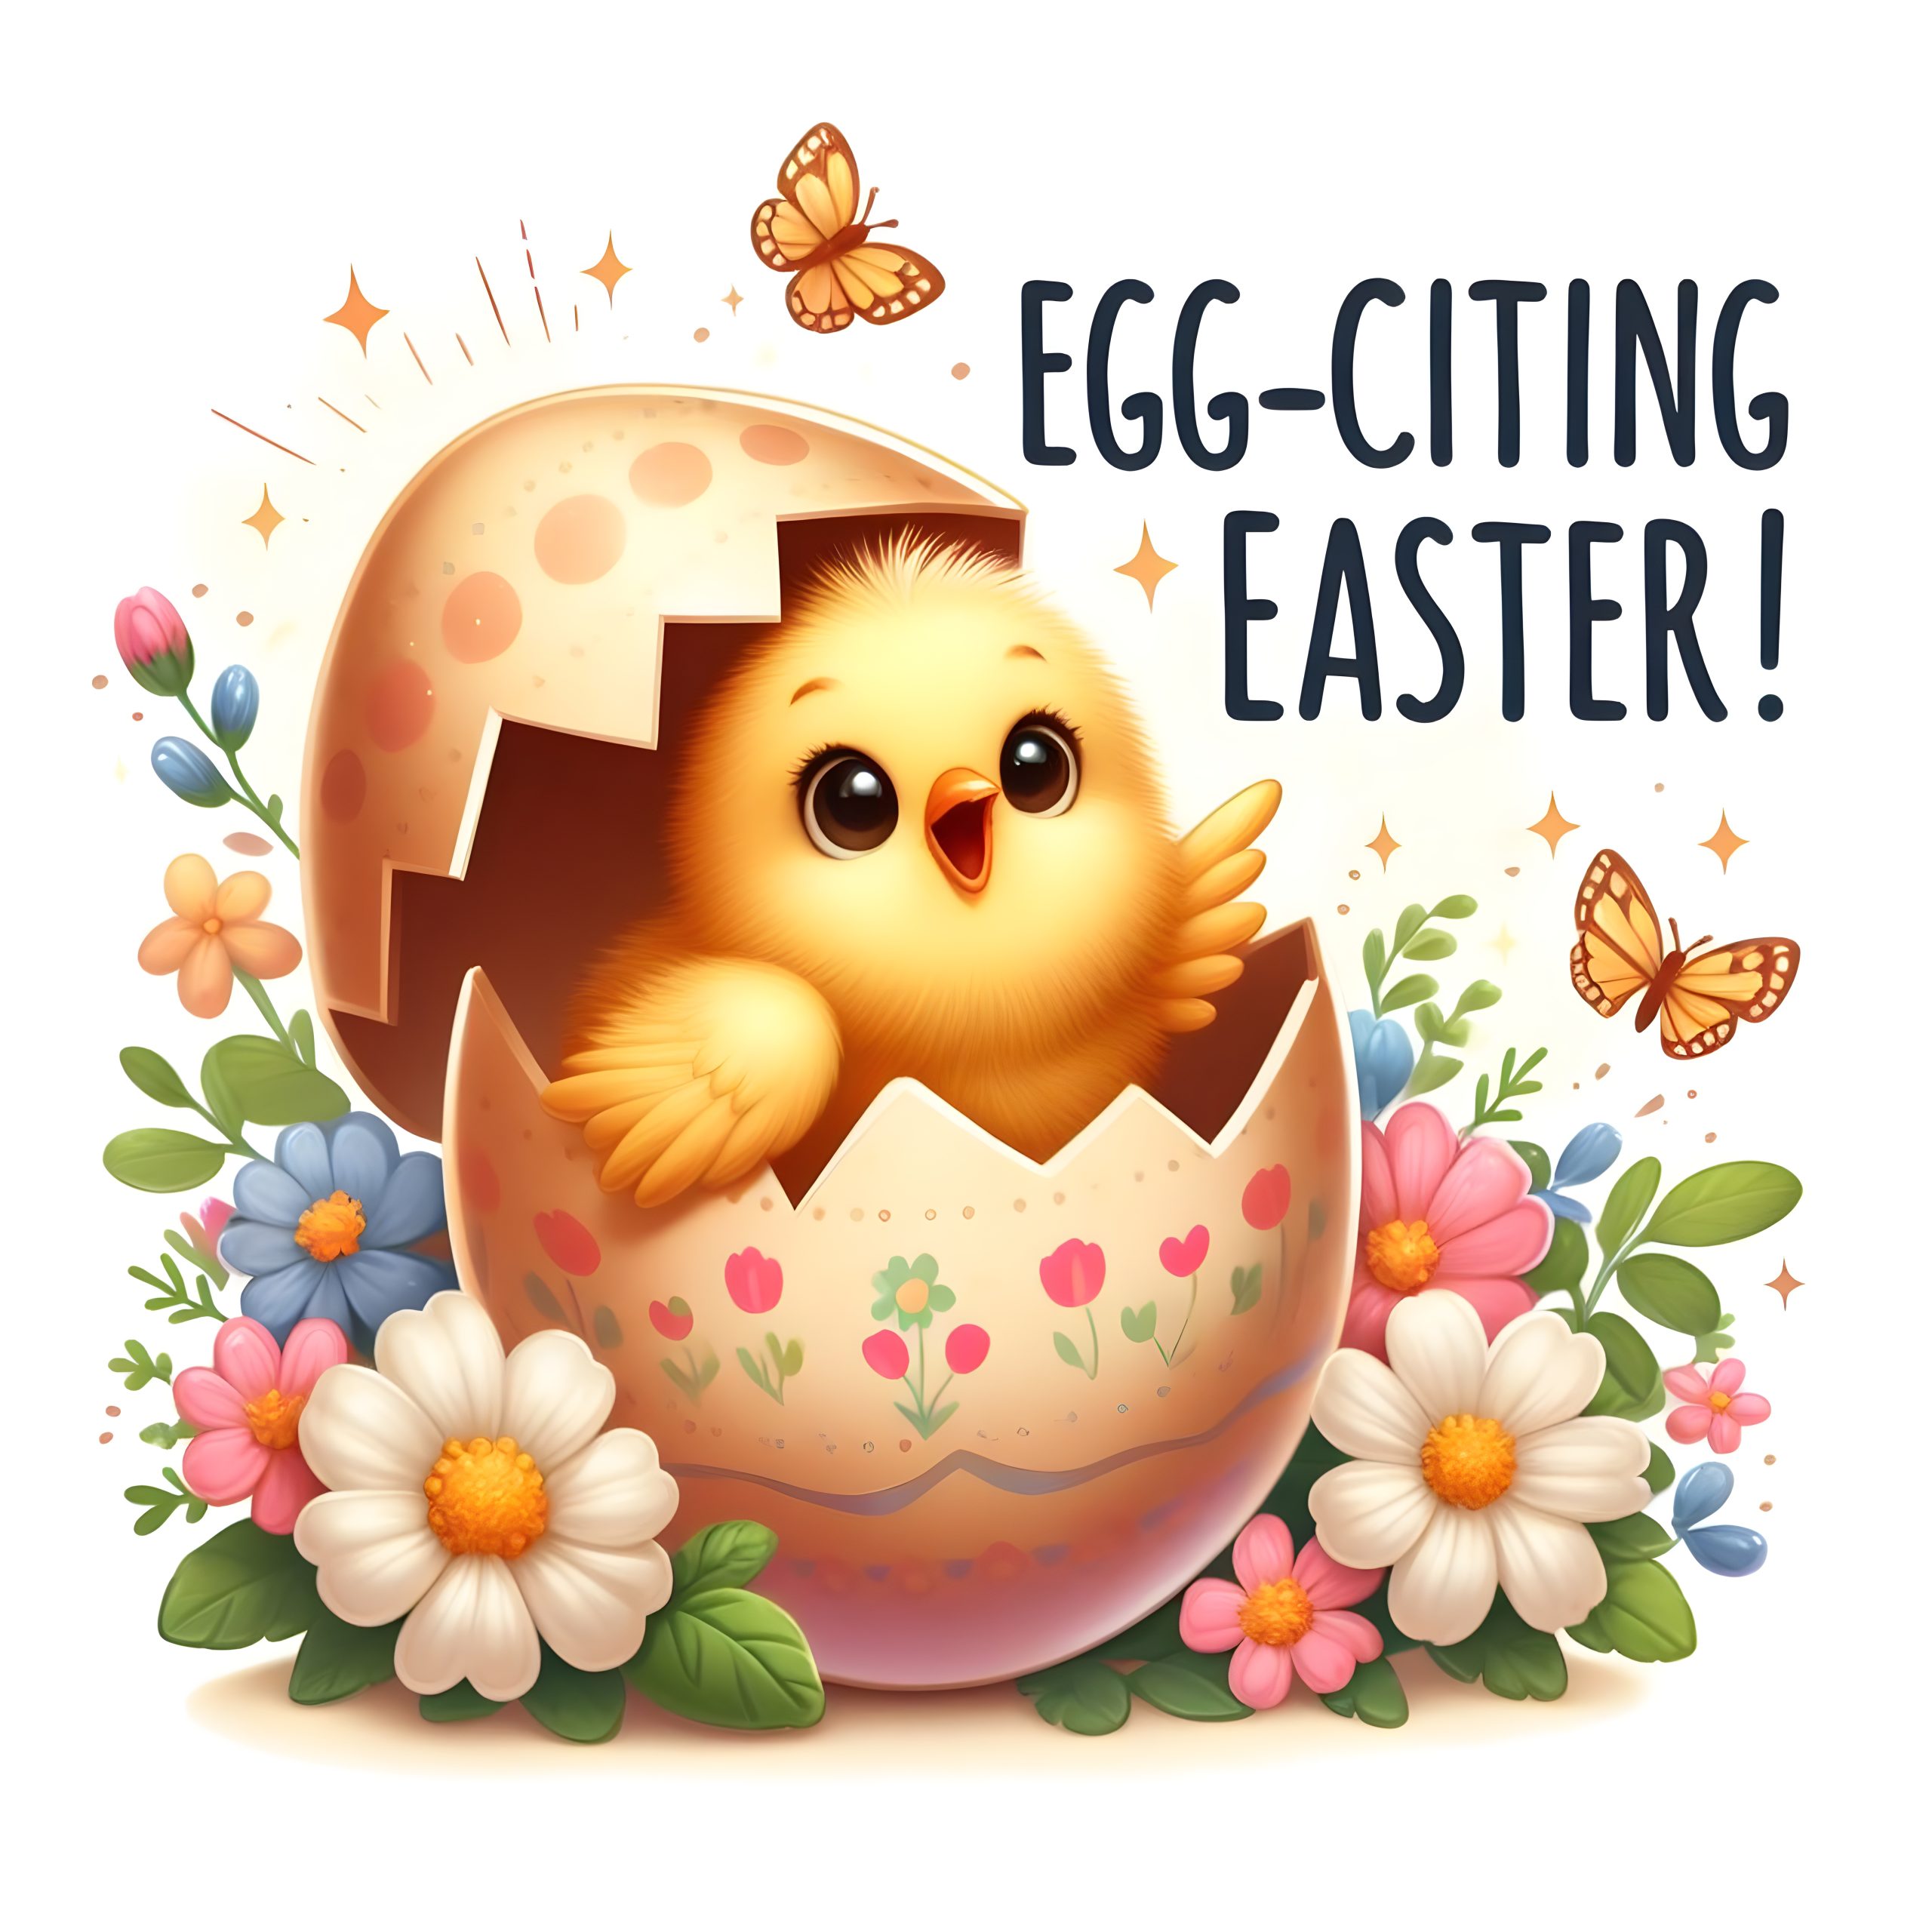 Egg Citing Easter